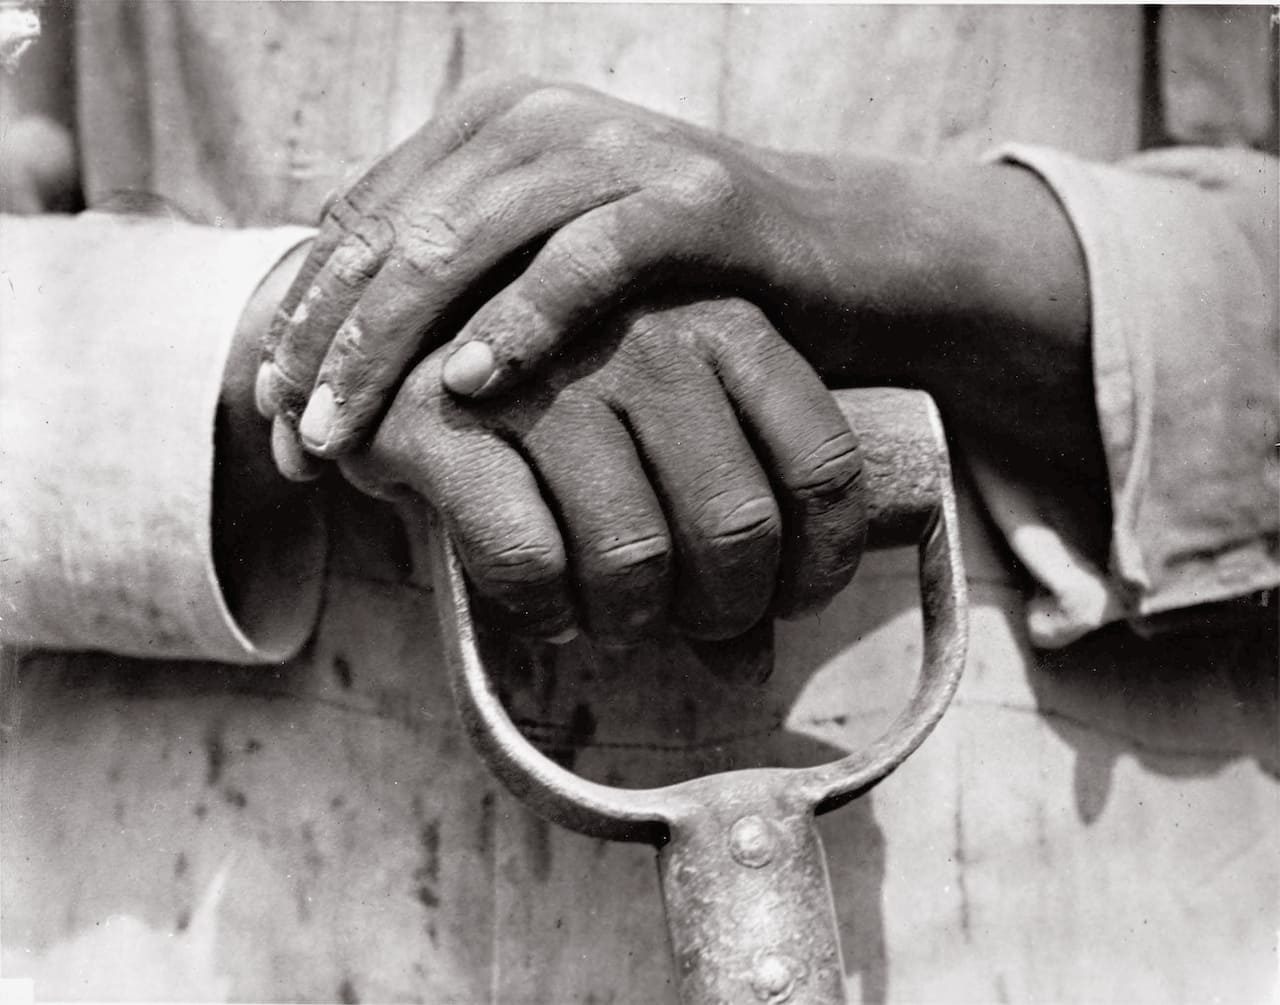 Tina Modotti, Mani che poggiano su utensile da lavoro, le mani di un lavoratore dell'edilizia, 1926